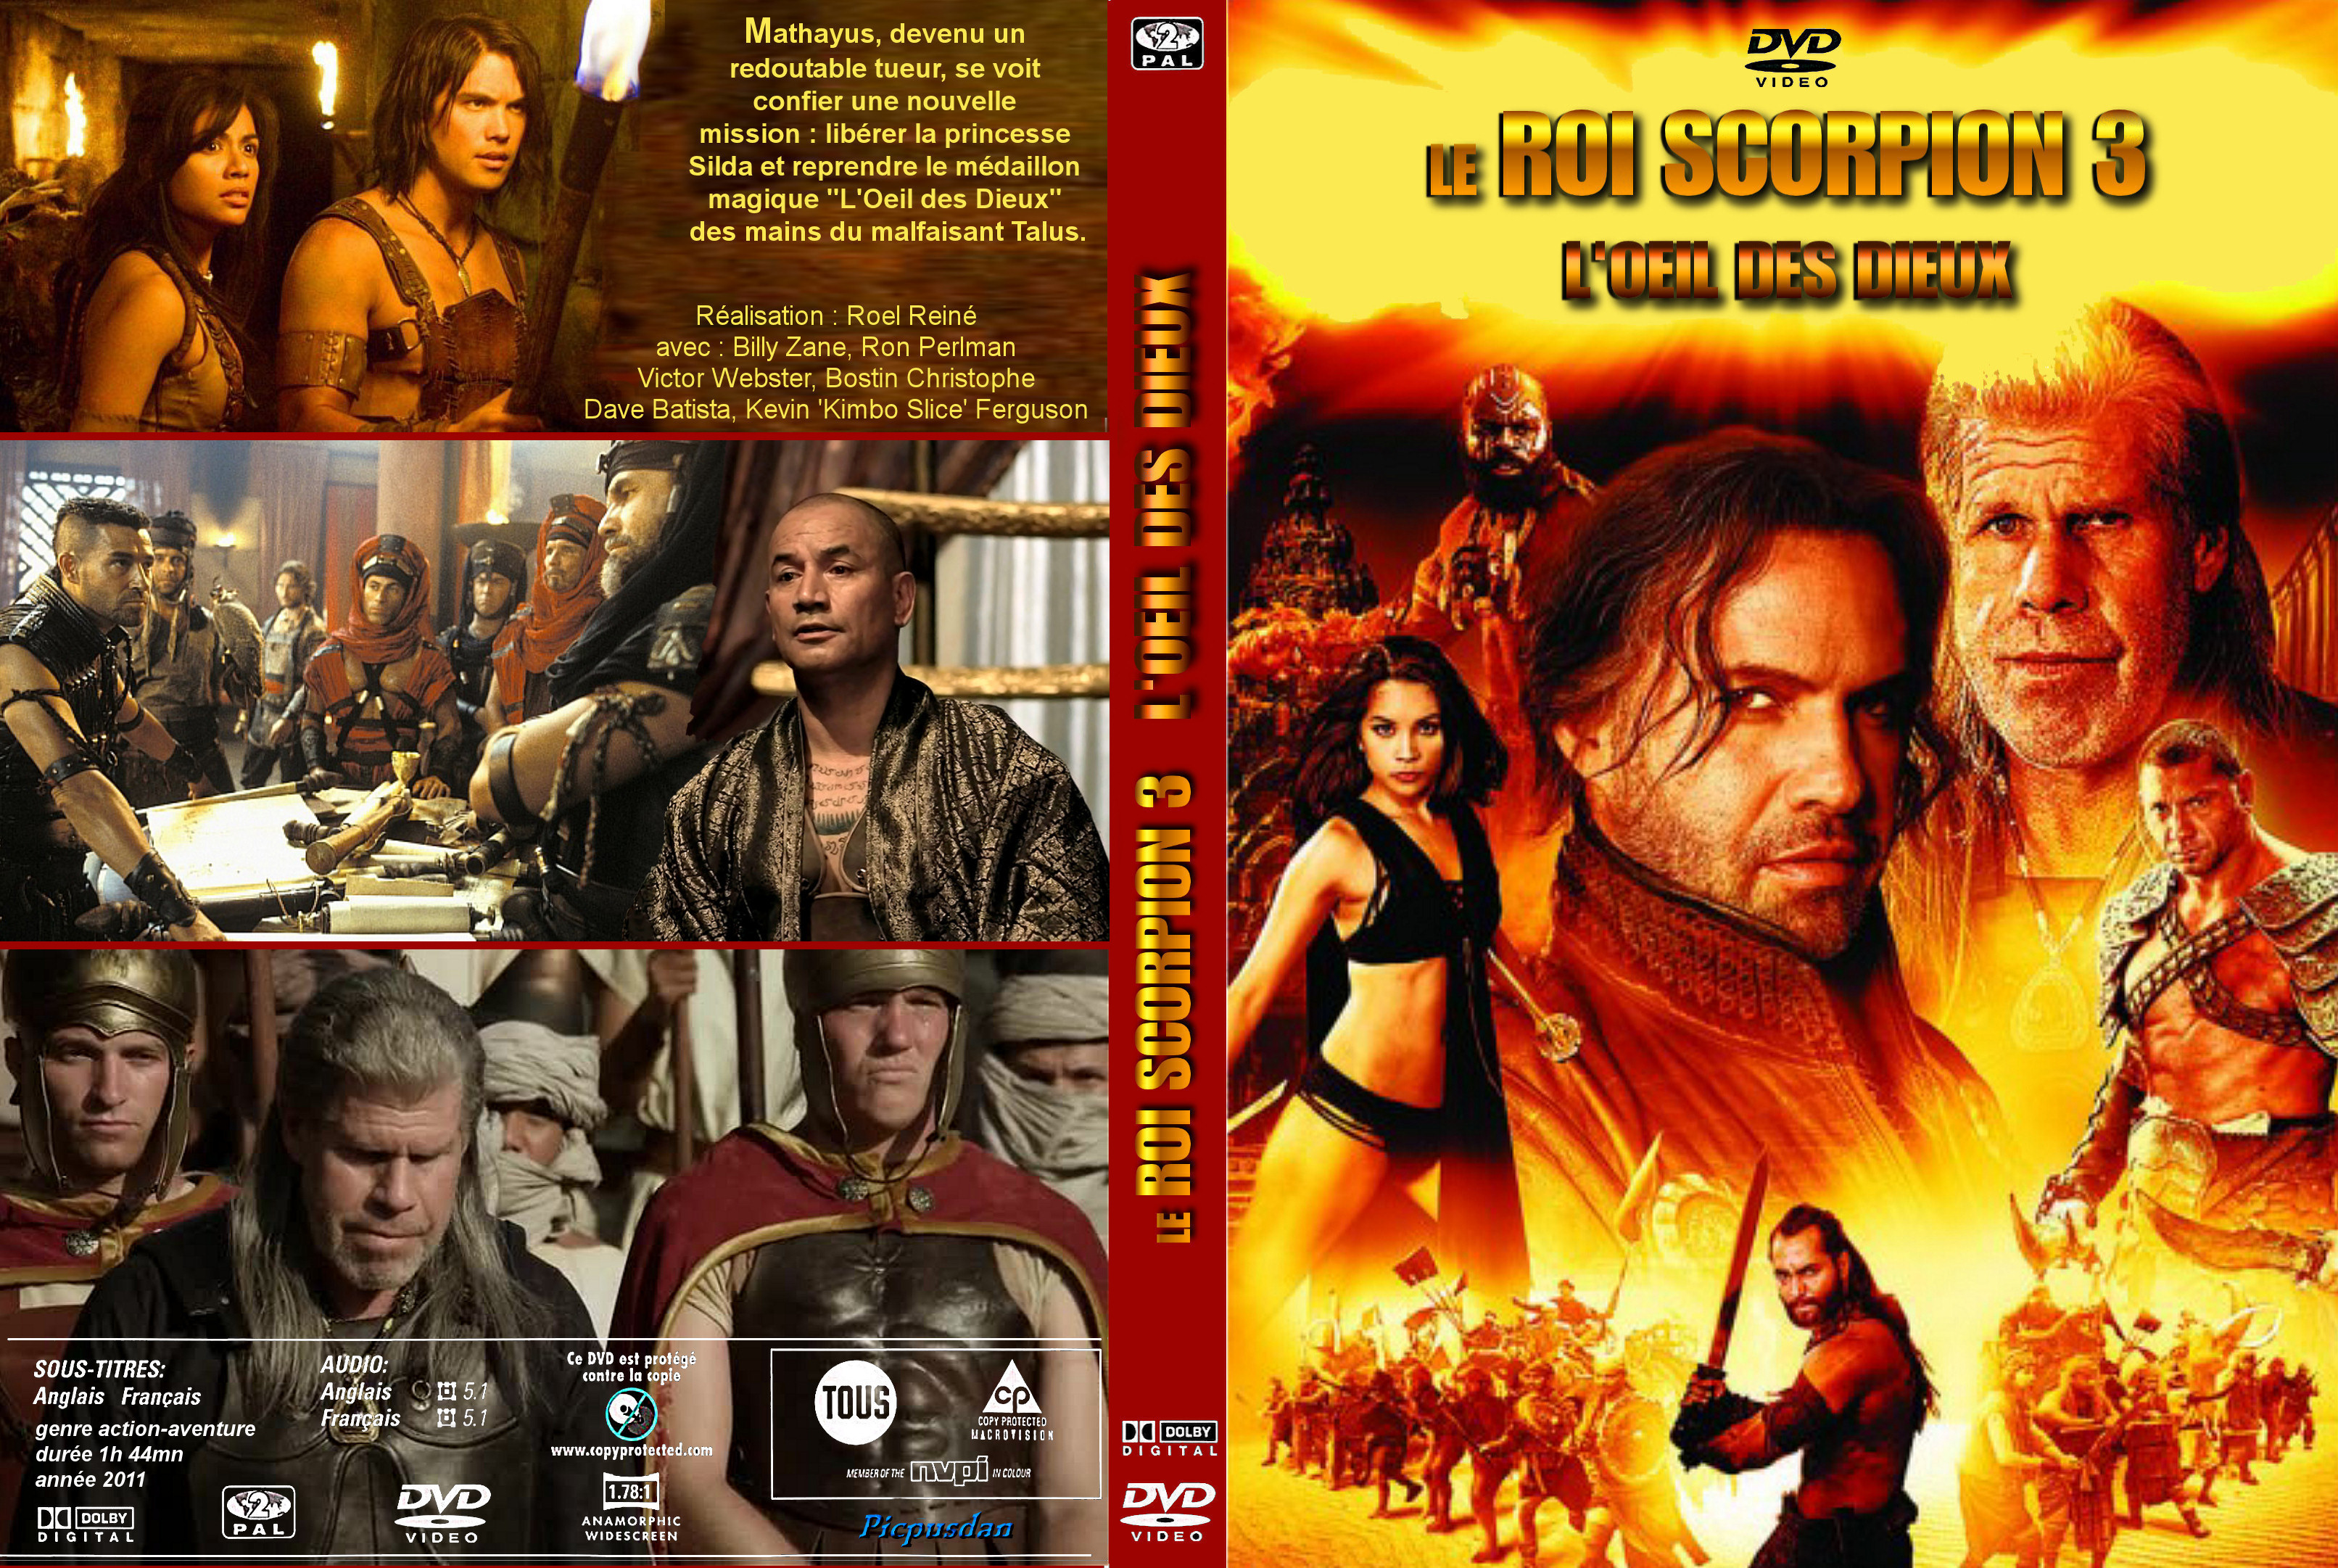 Jaquette DVD Le roi scorpion 3 - L